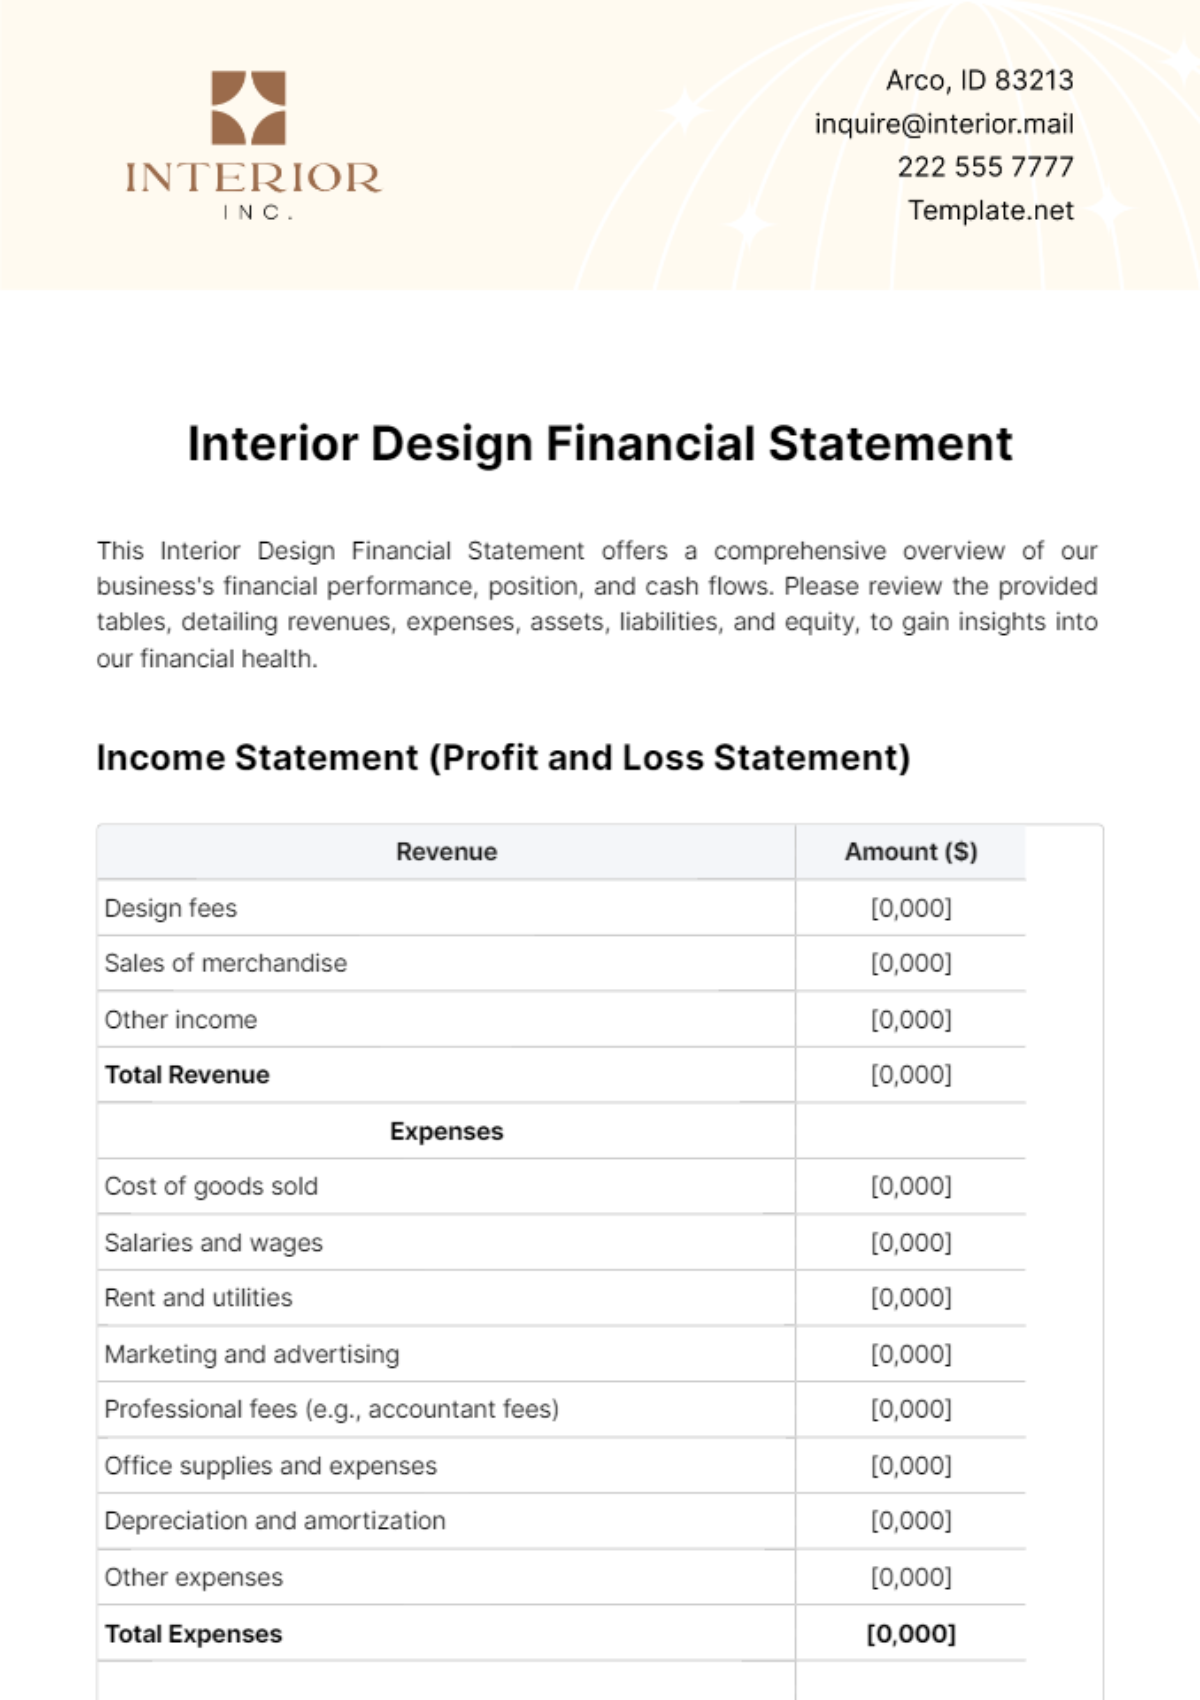 Interior Design Financial Statement Template